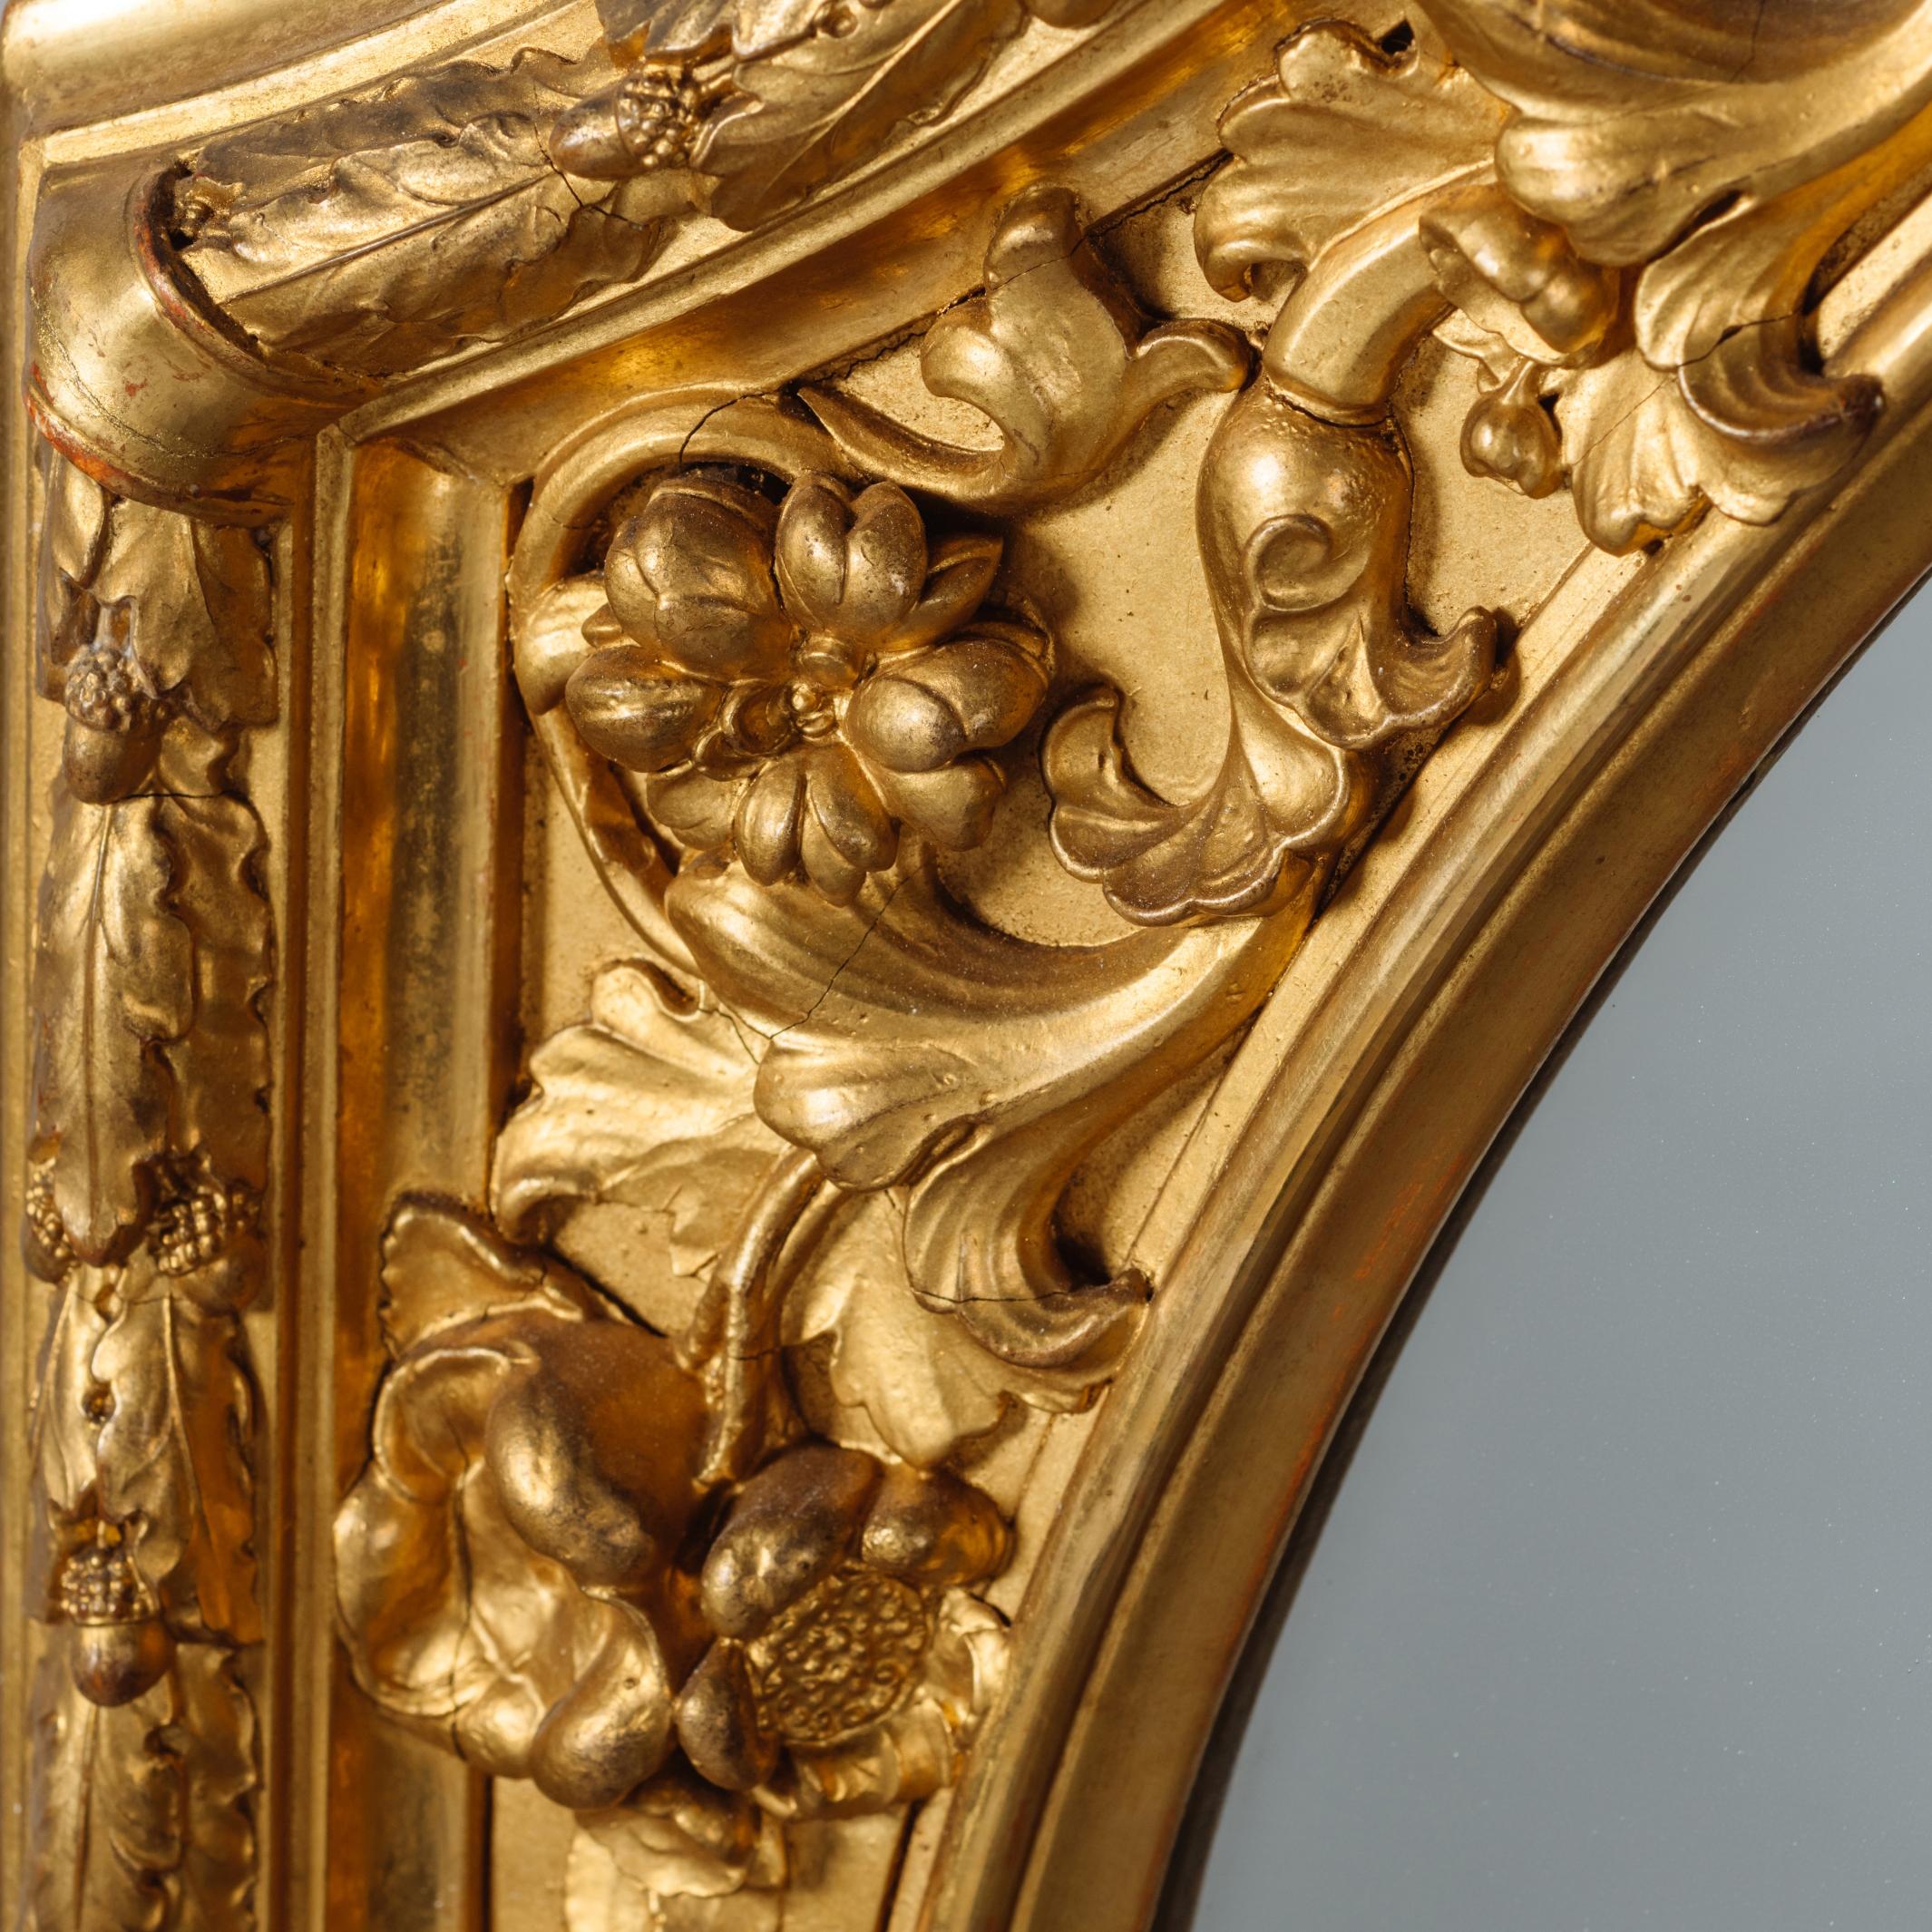 Ein schönes Paar großer geschnitzter Spiegel aus Goldholz und Gesso.

Jeder Spiegel hat eine gewölbte Spiegelplatte, die von blattgeschnitzten Bordüren eingerahmt ist.

Möglicherweise italienisch oder österreichisch, um 1870.